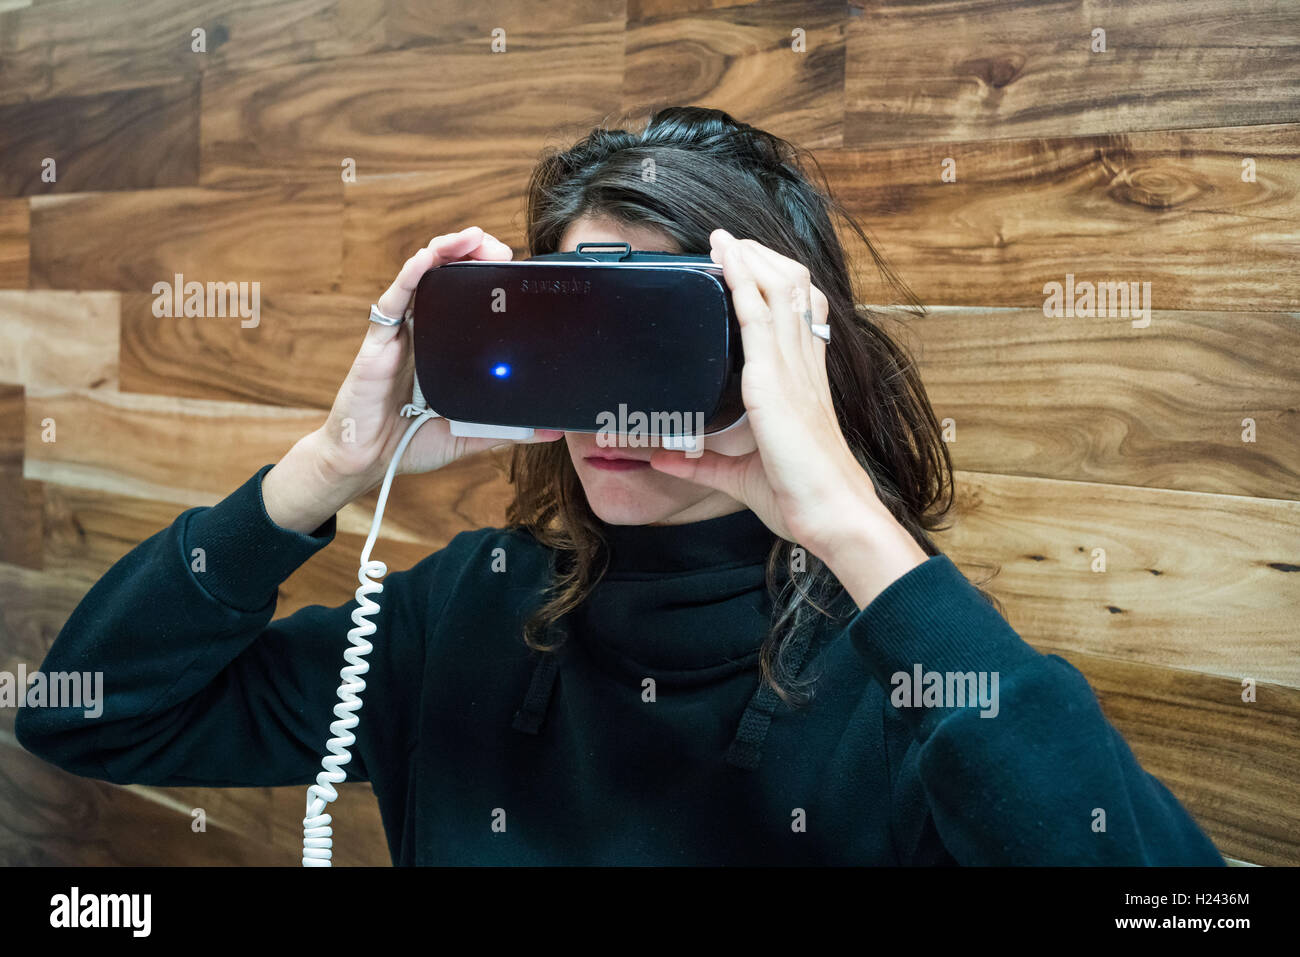 Woman wearing a virtual reality headset. Stock Photo